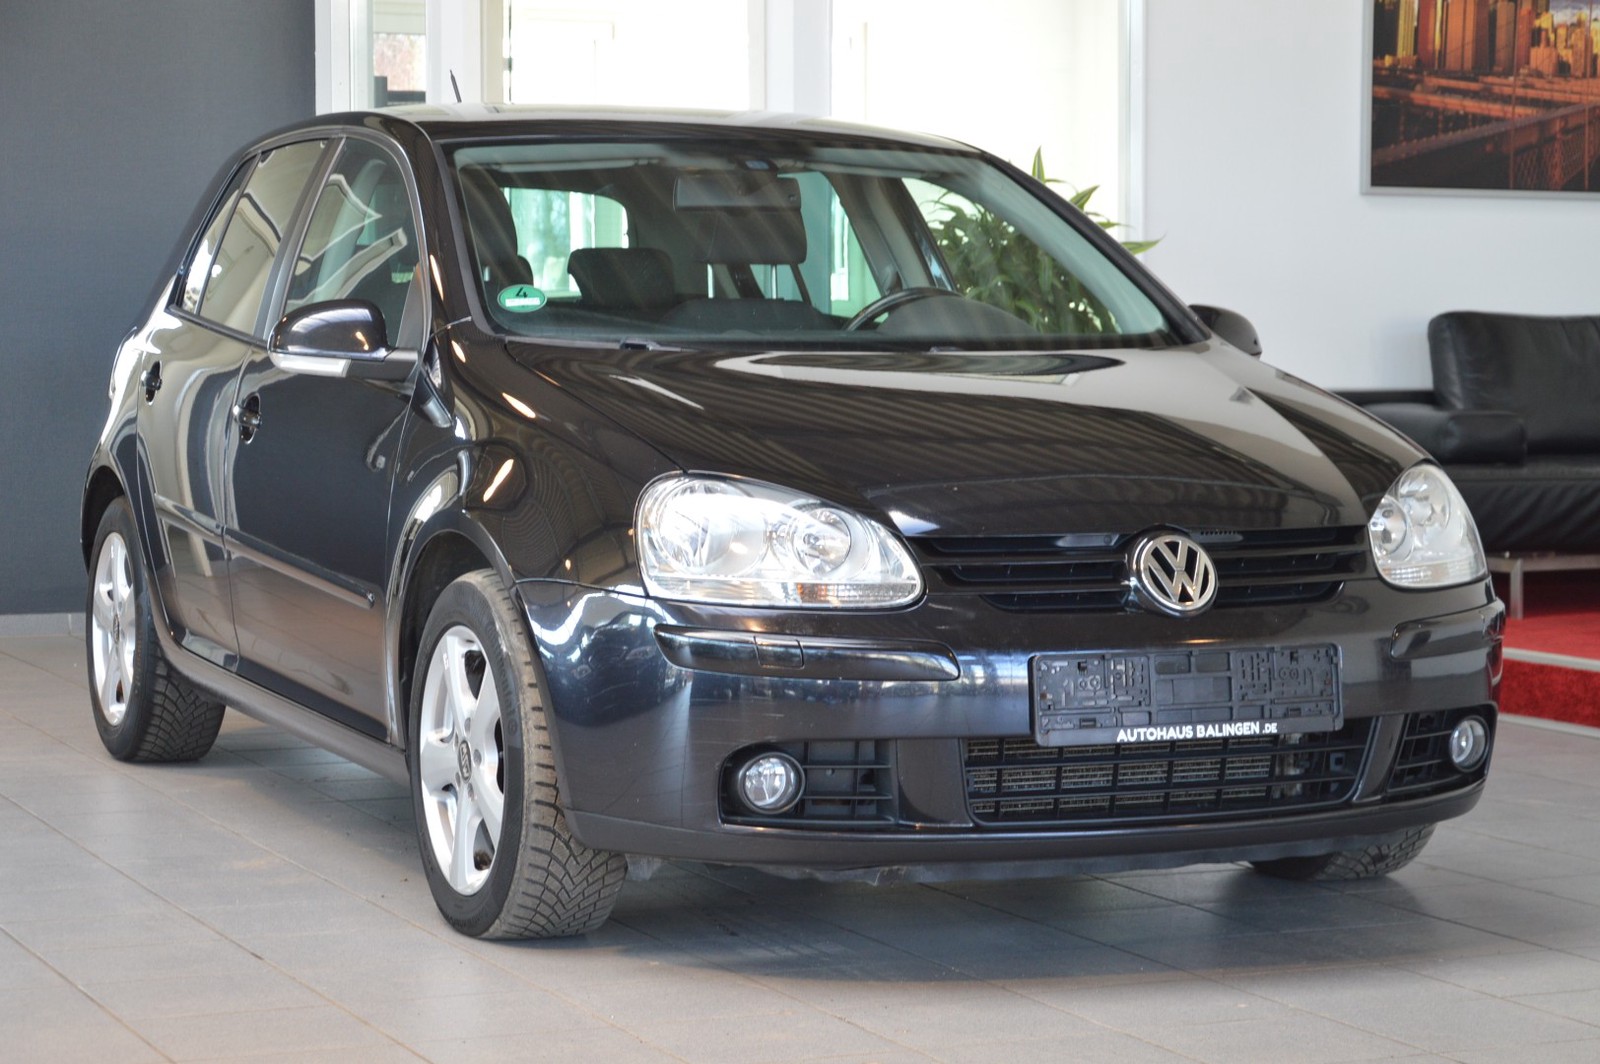 Volkswagen Golf V United gebraucht kaufen in Balingen Preis 4100 eur Int Nr 1338 VERKAUFT